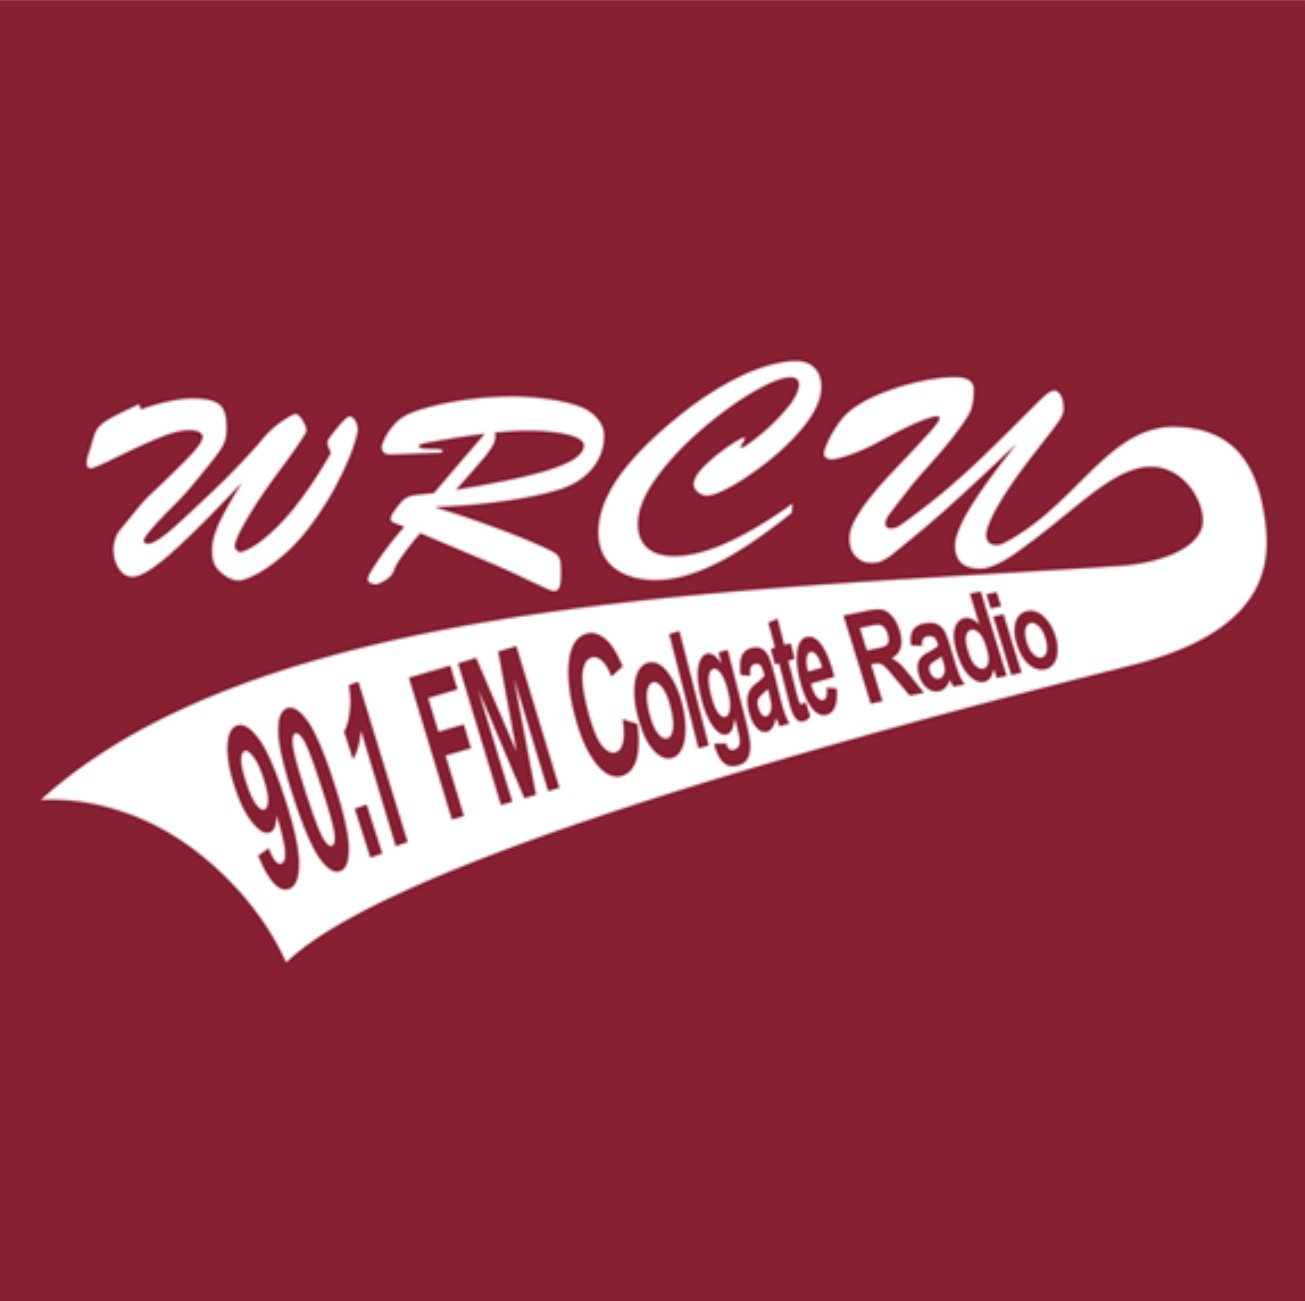 WRCU FM 90.1